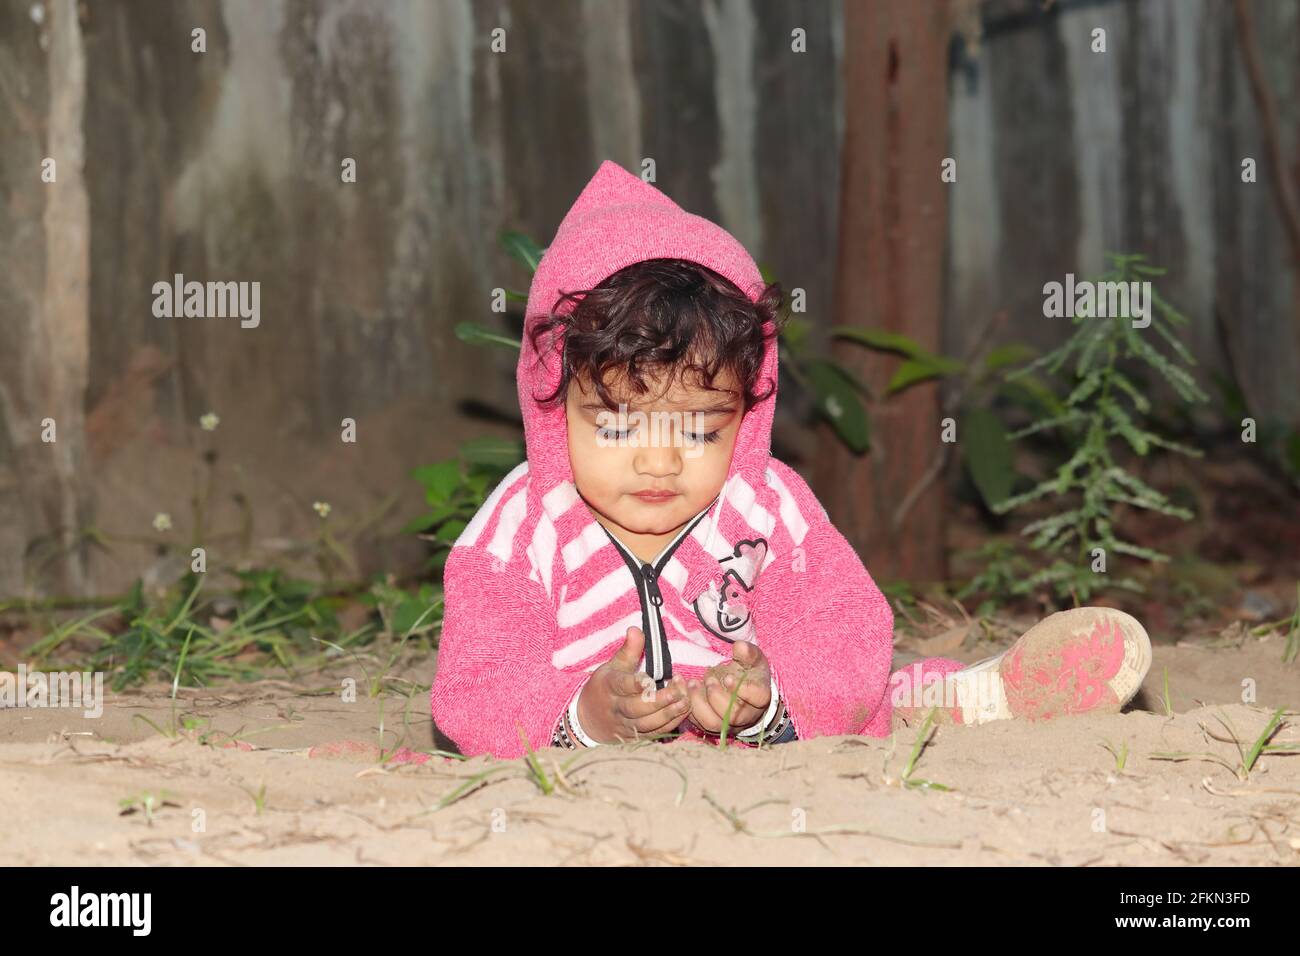 Nahaufnahme eines kleinen asiatischen Jungen, der auf sandigen Böden spielt. Konzept zur Kindheit, schönes indisches Kinderspiel, Kindheitserinnerungen. Stockfoto